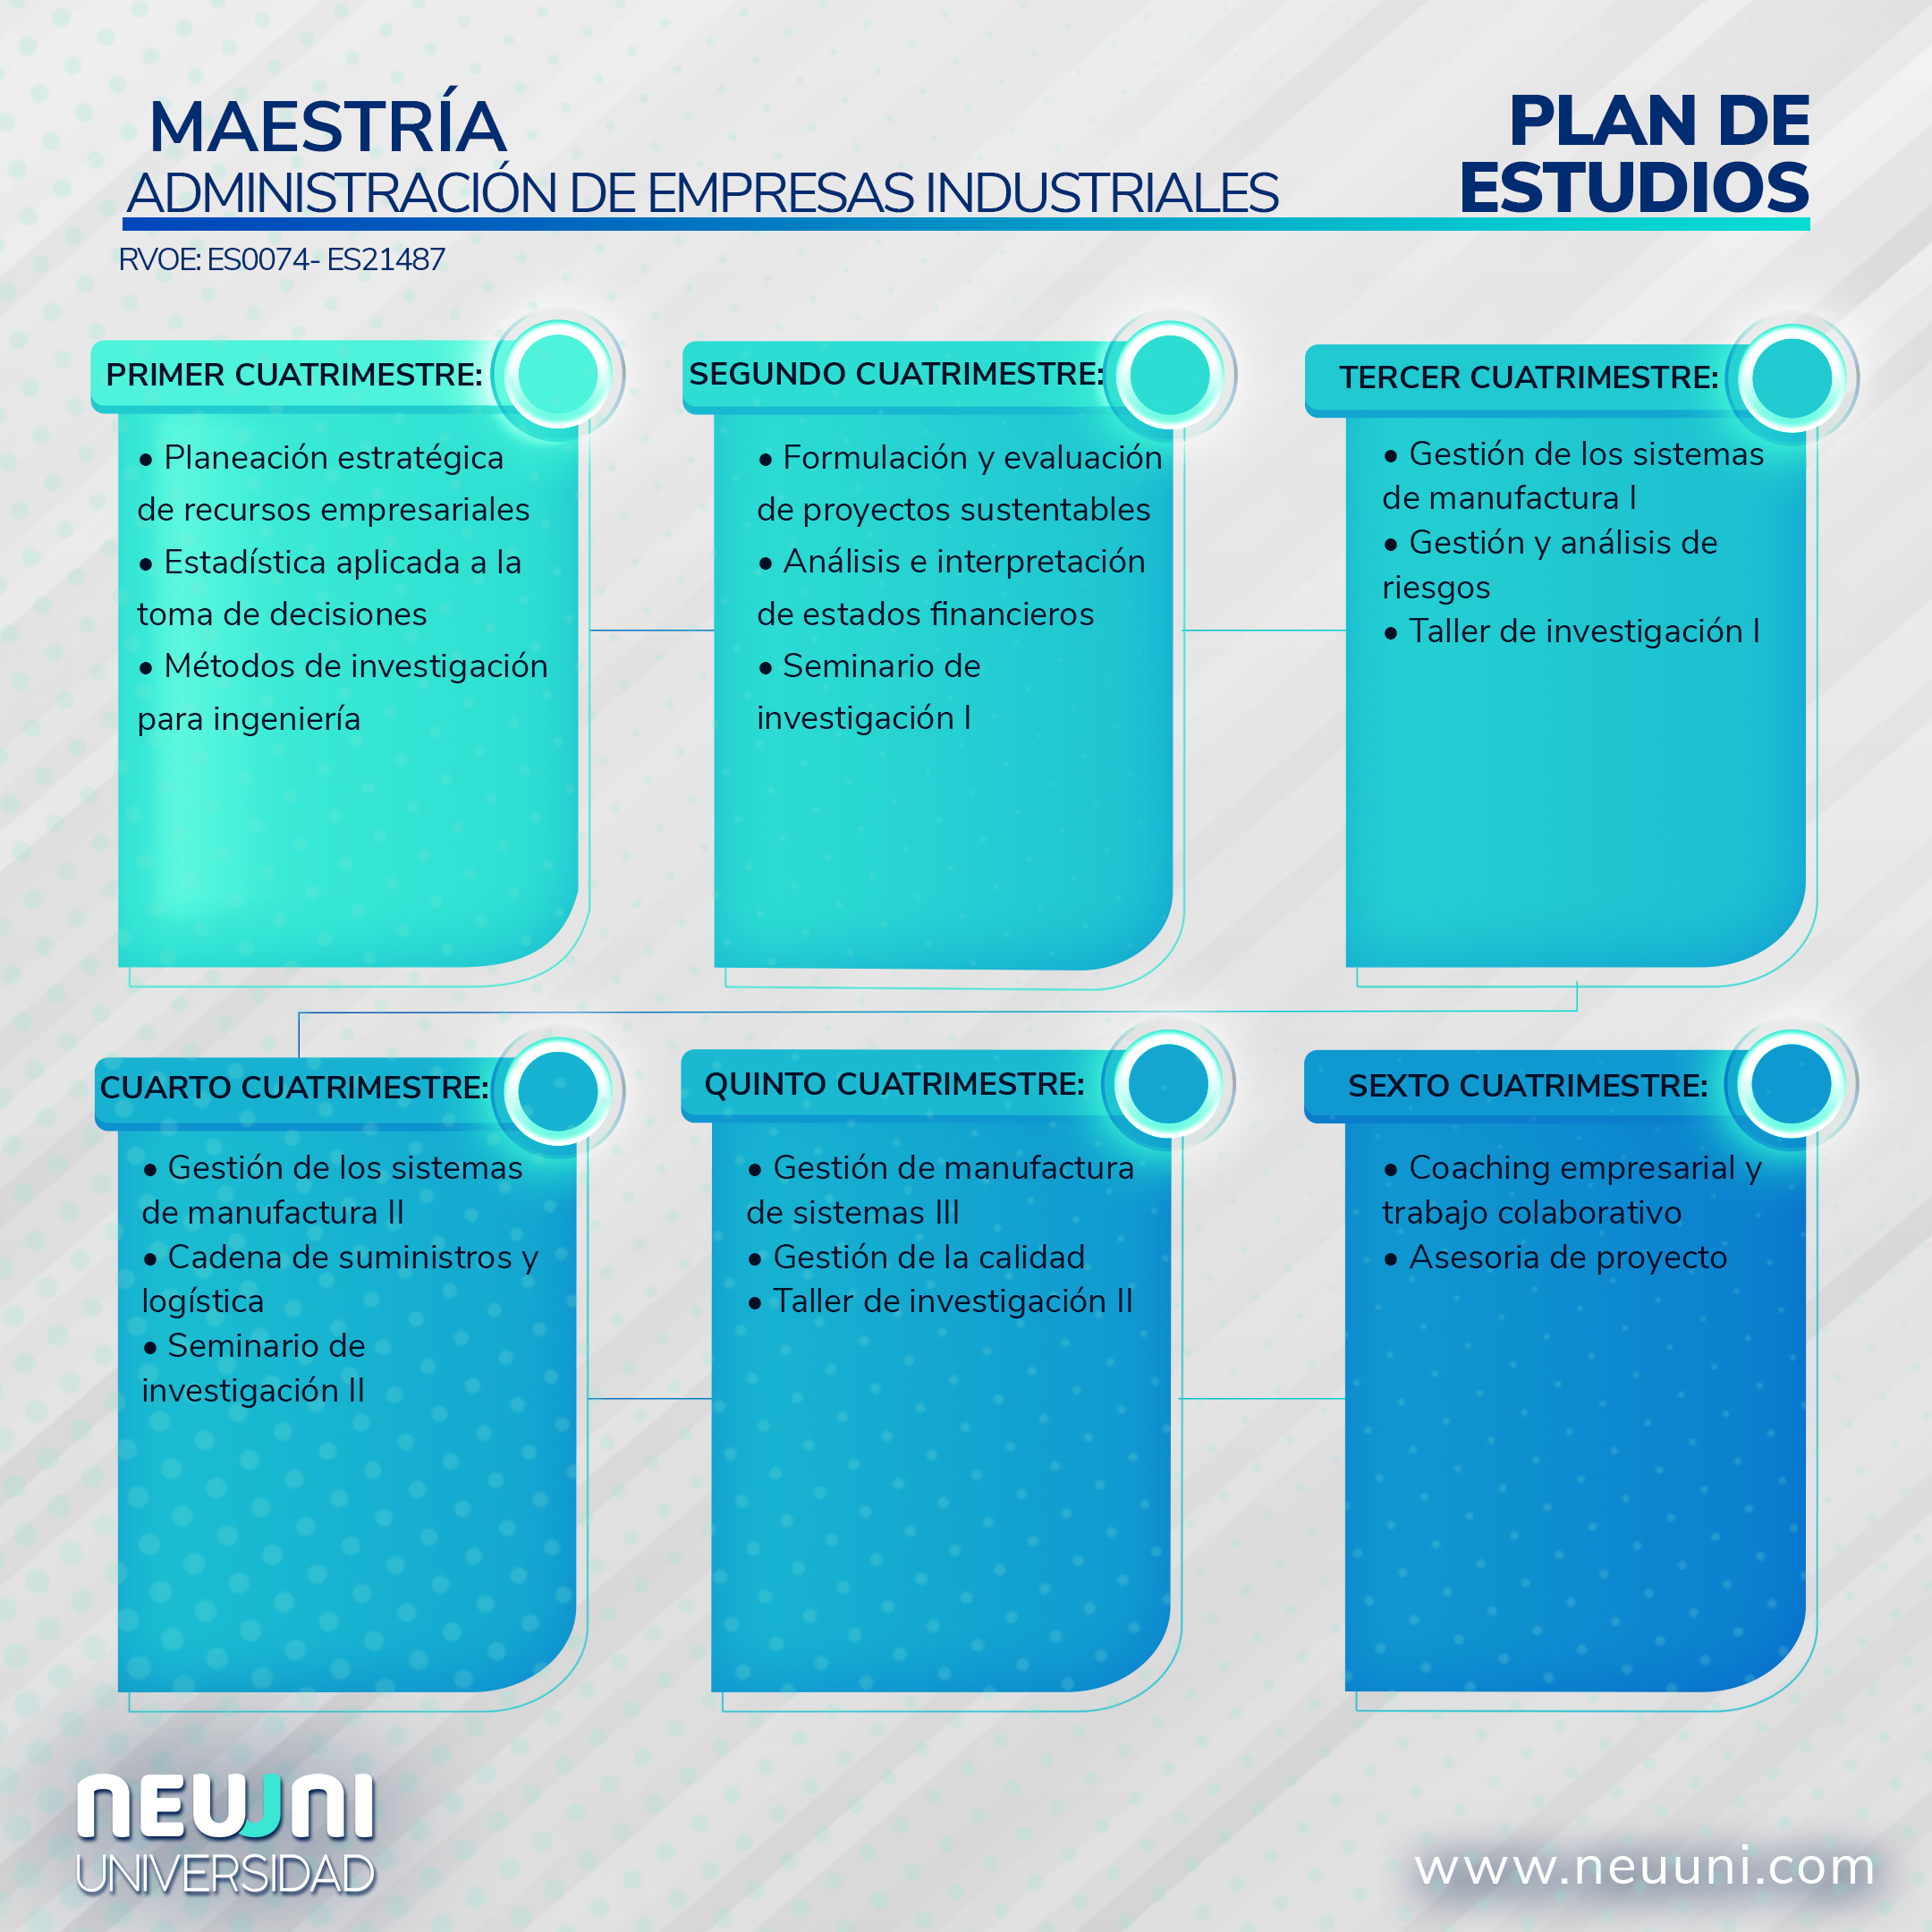 Plan de estudios Maestría Administración de empresas Neuuni